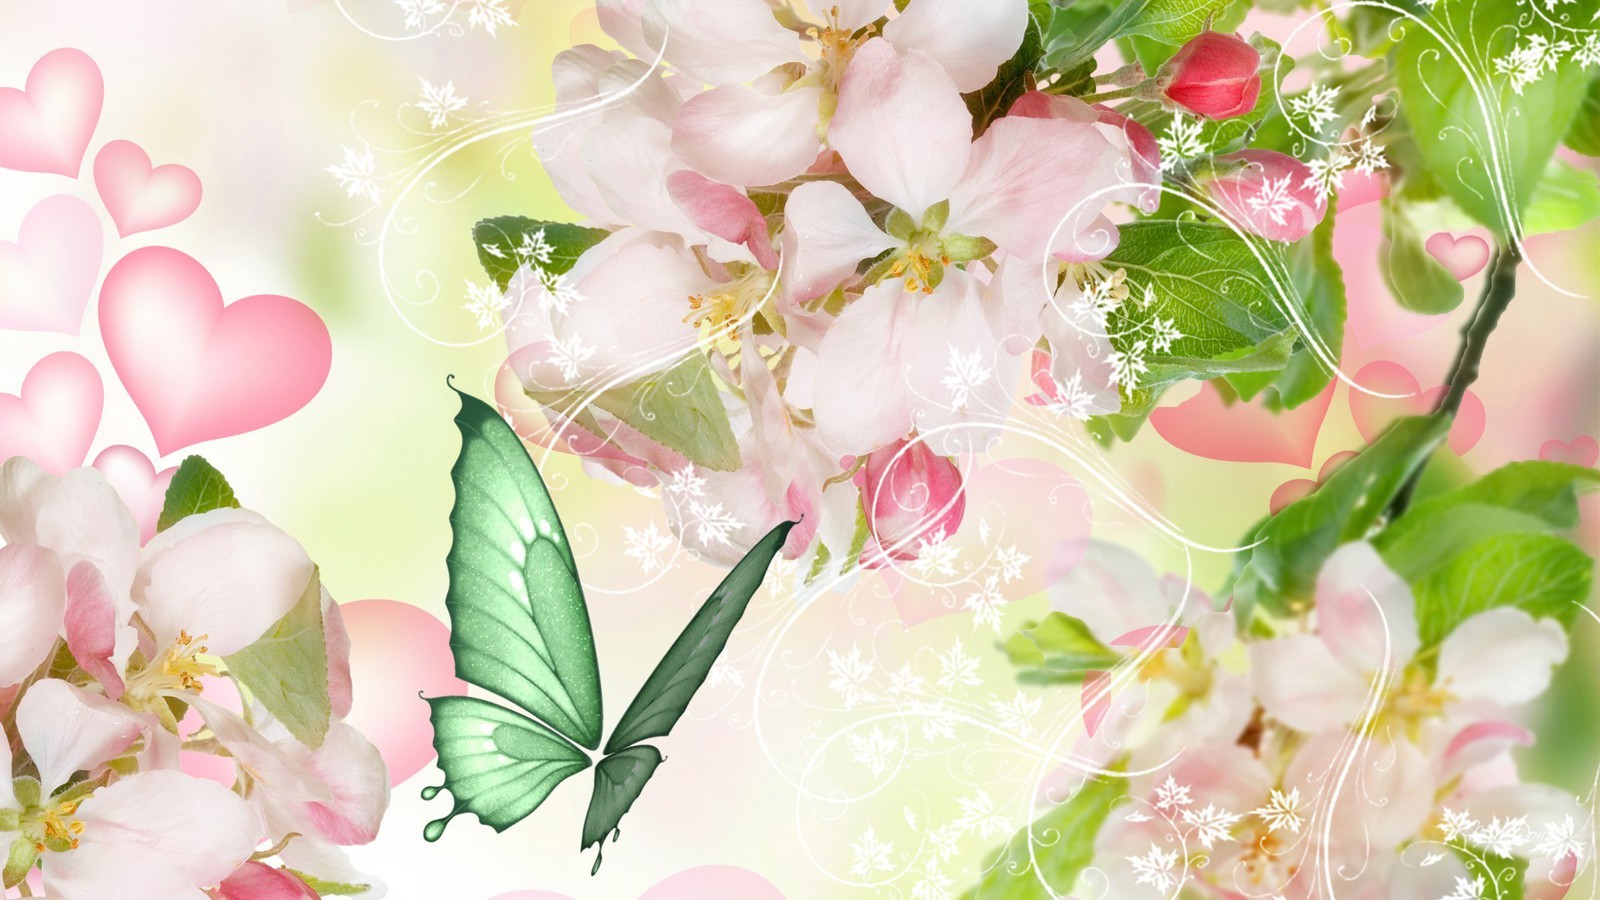 Apple Blossoms For Spring Wallpaper Allwallpaper In